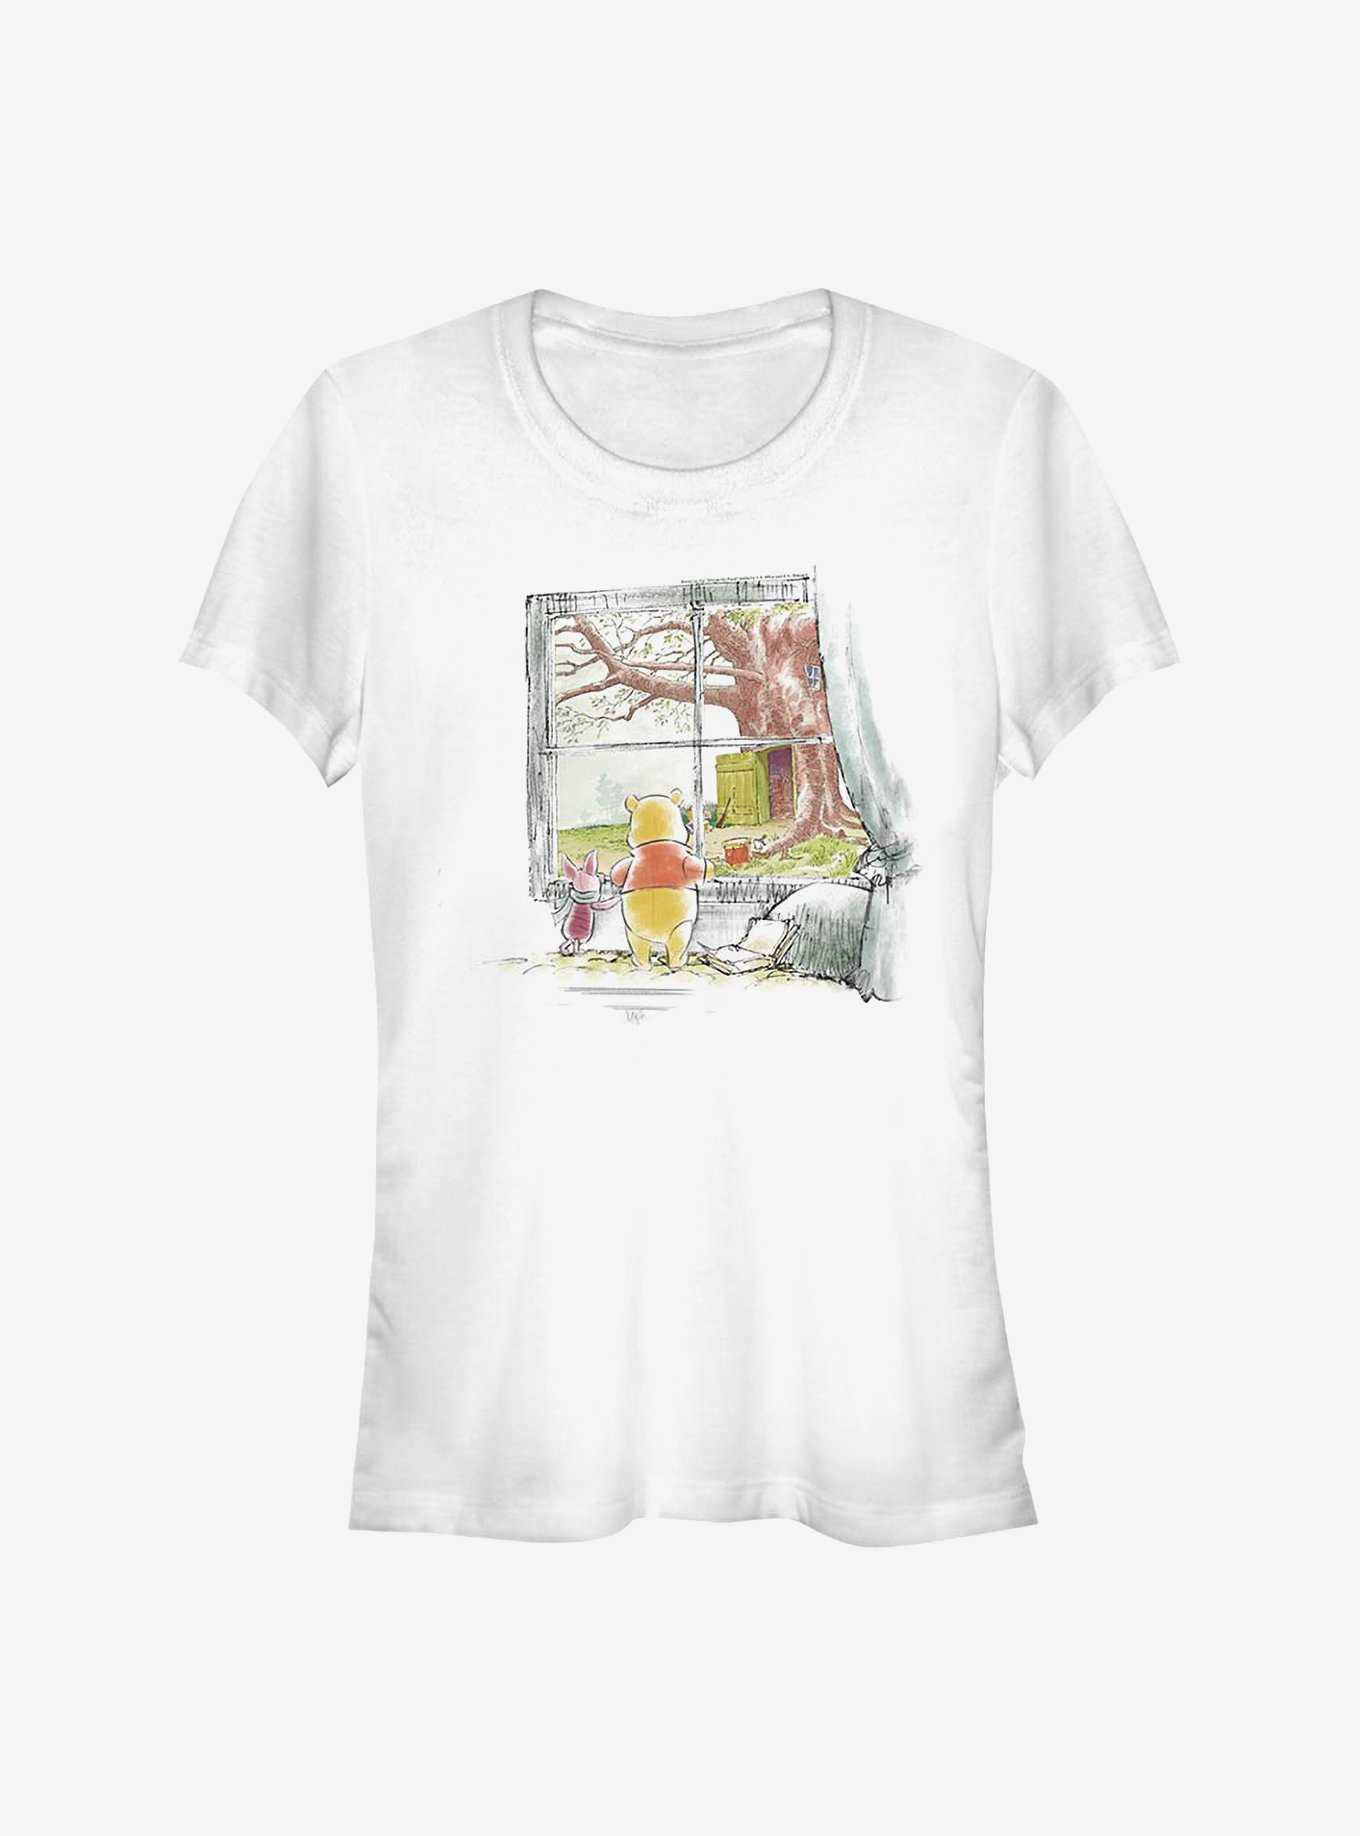 Disney Winnie The Pooh Winnie & Piglet Window Girls T-Shirt, , hi-res